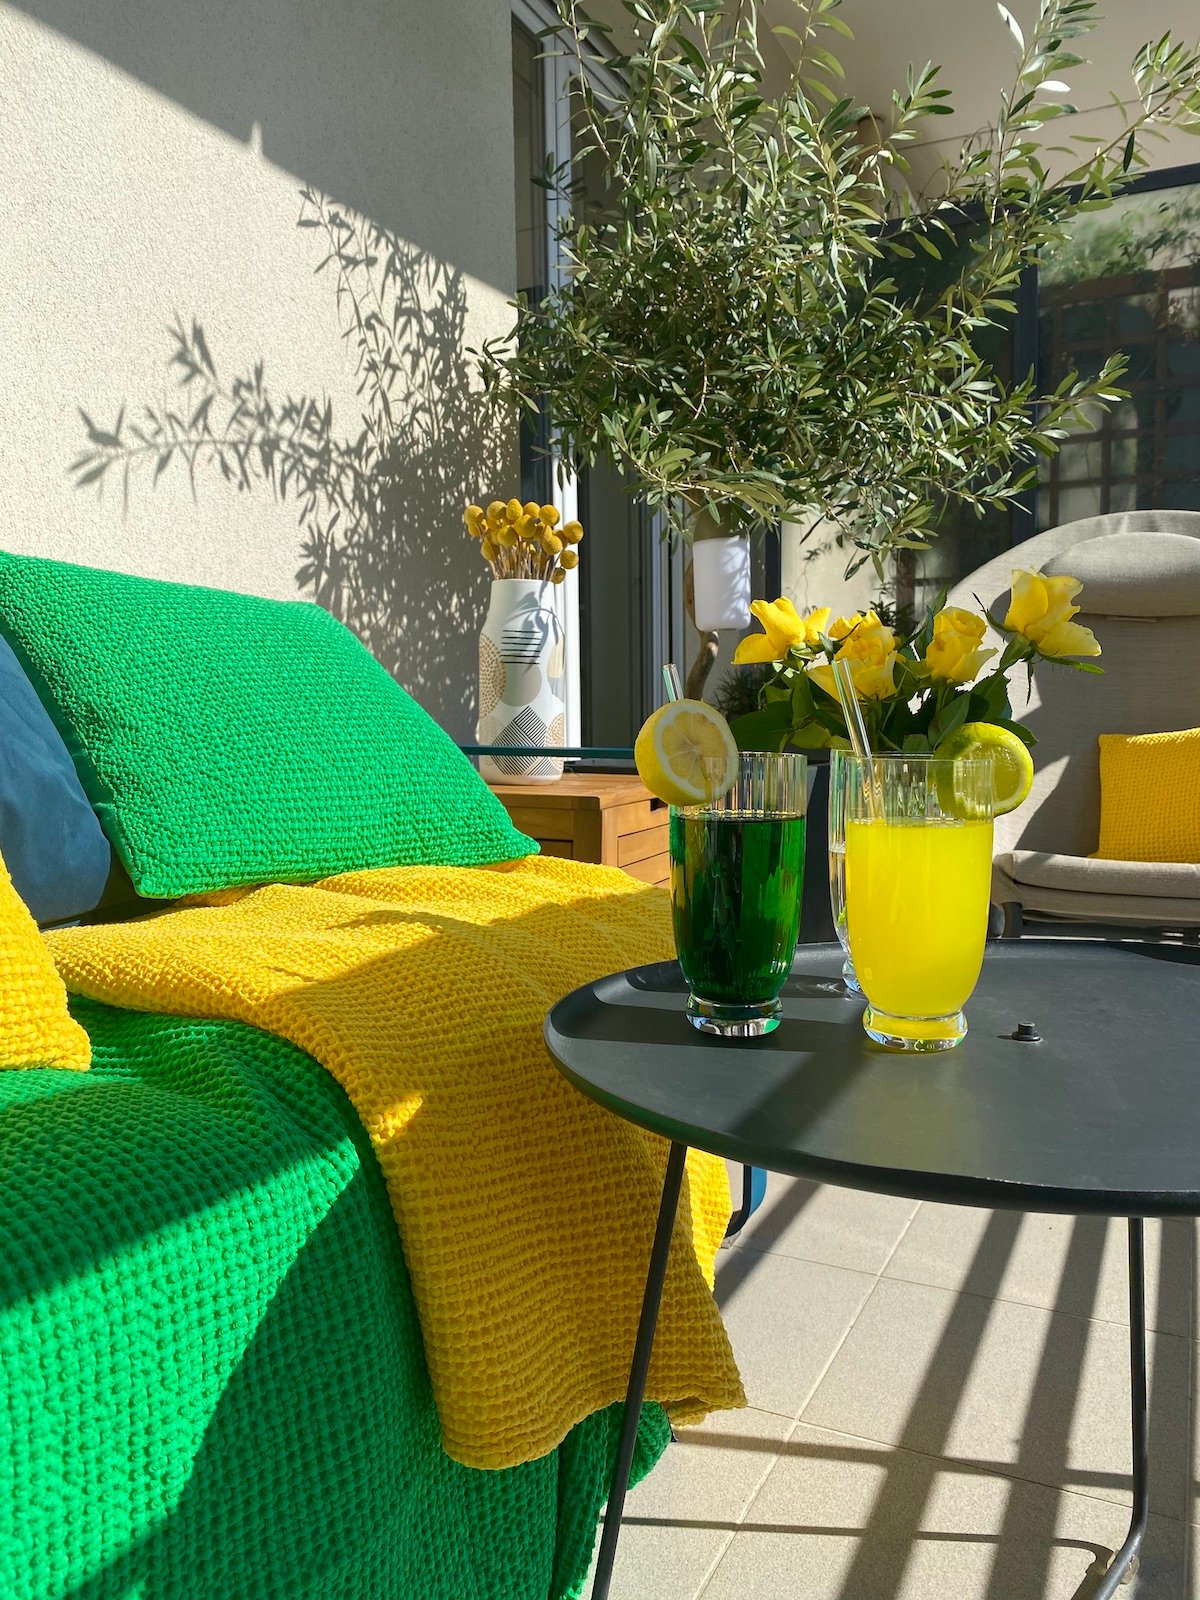 comment aménager terrasse colorée longueur canapé fauteuil coin salon jardin olivier en pot jardinière